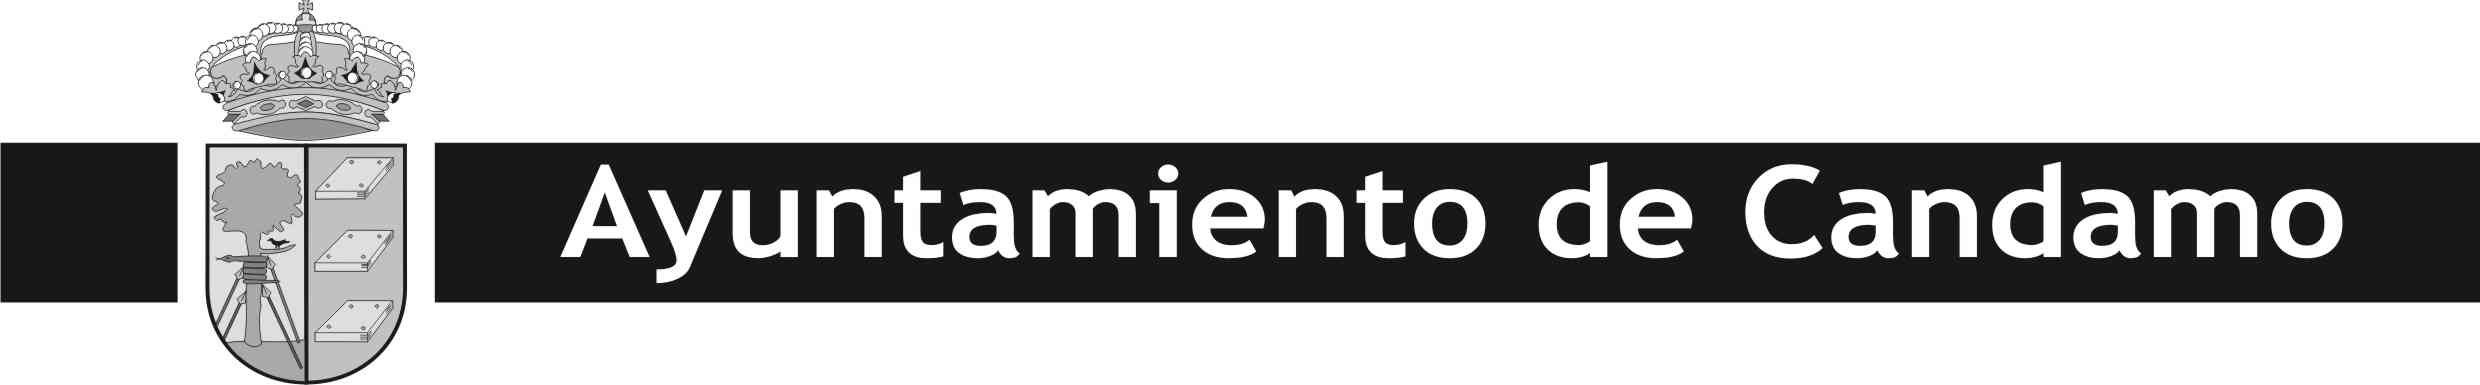 Logo Ayuntamiento de Candamo Blanco y negro PubliSubvenciones